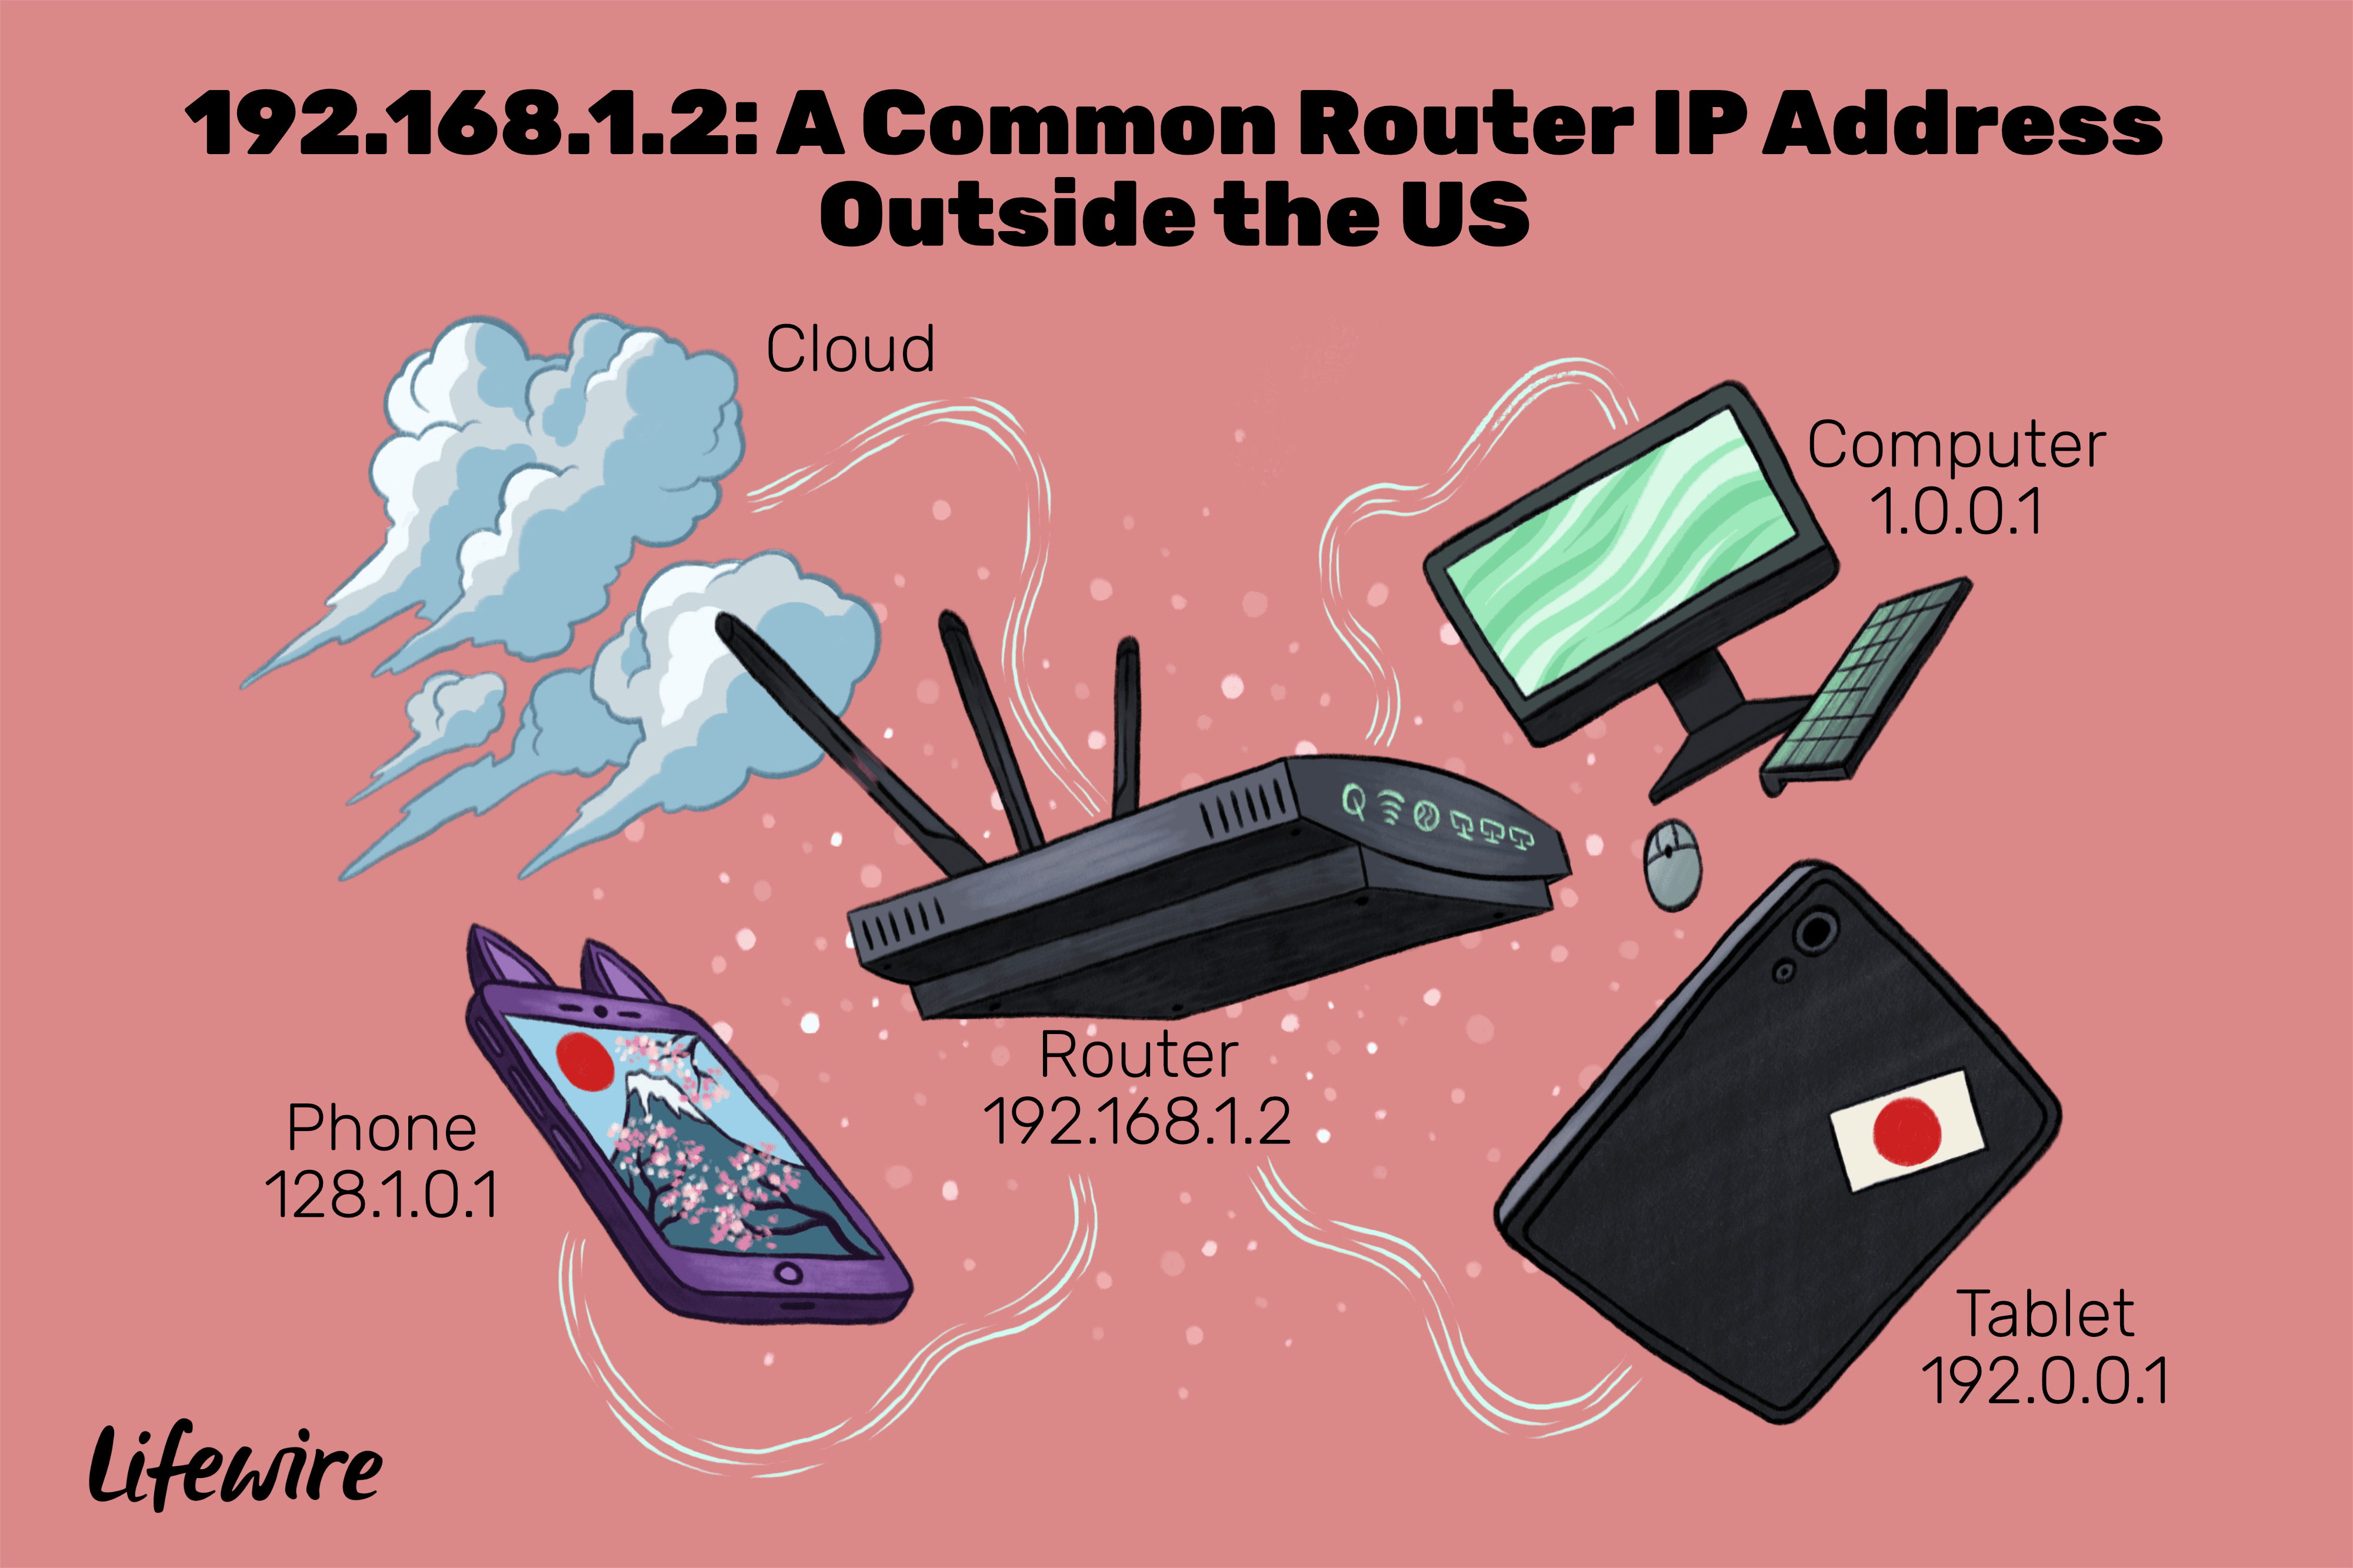 Een illustratie van de apparaten die het IP-adres 192.168.1.2 gebruiken.